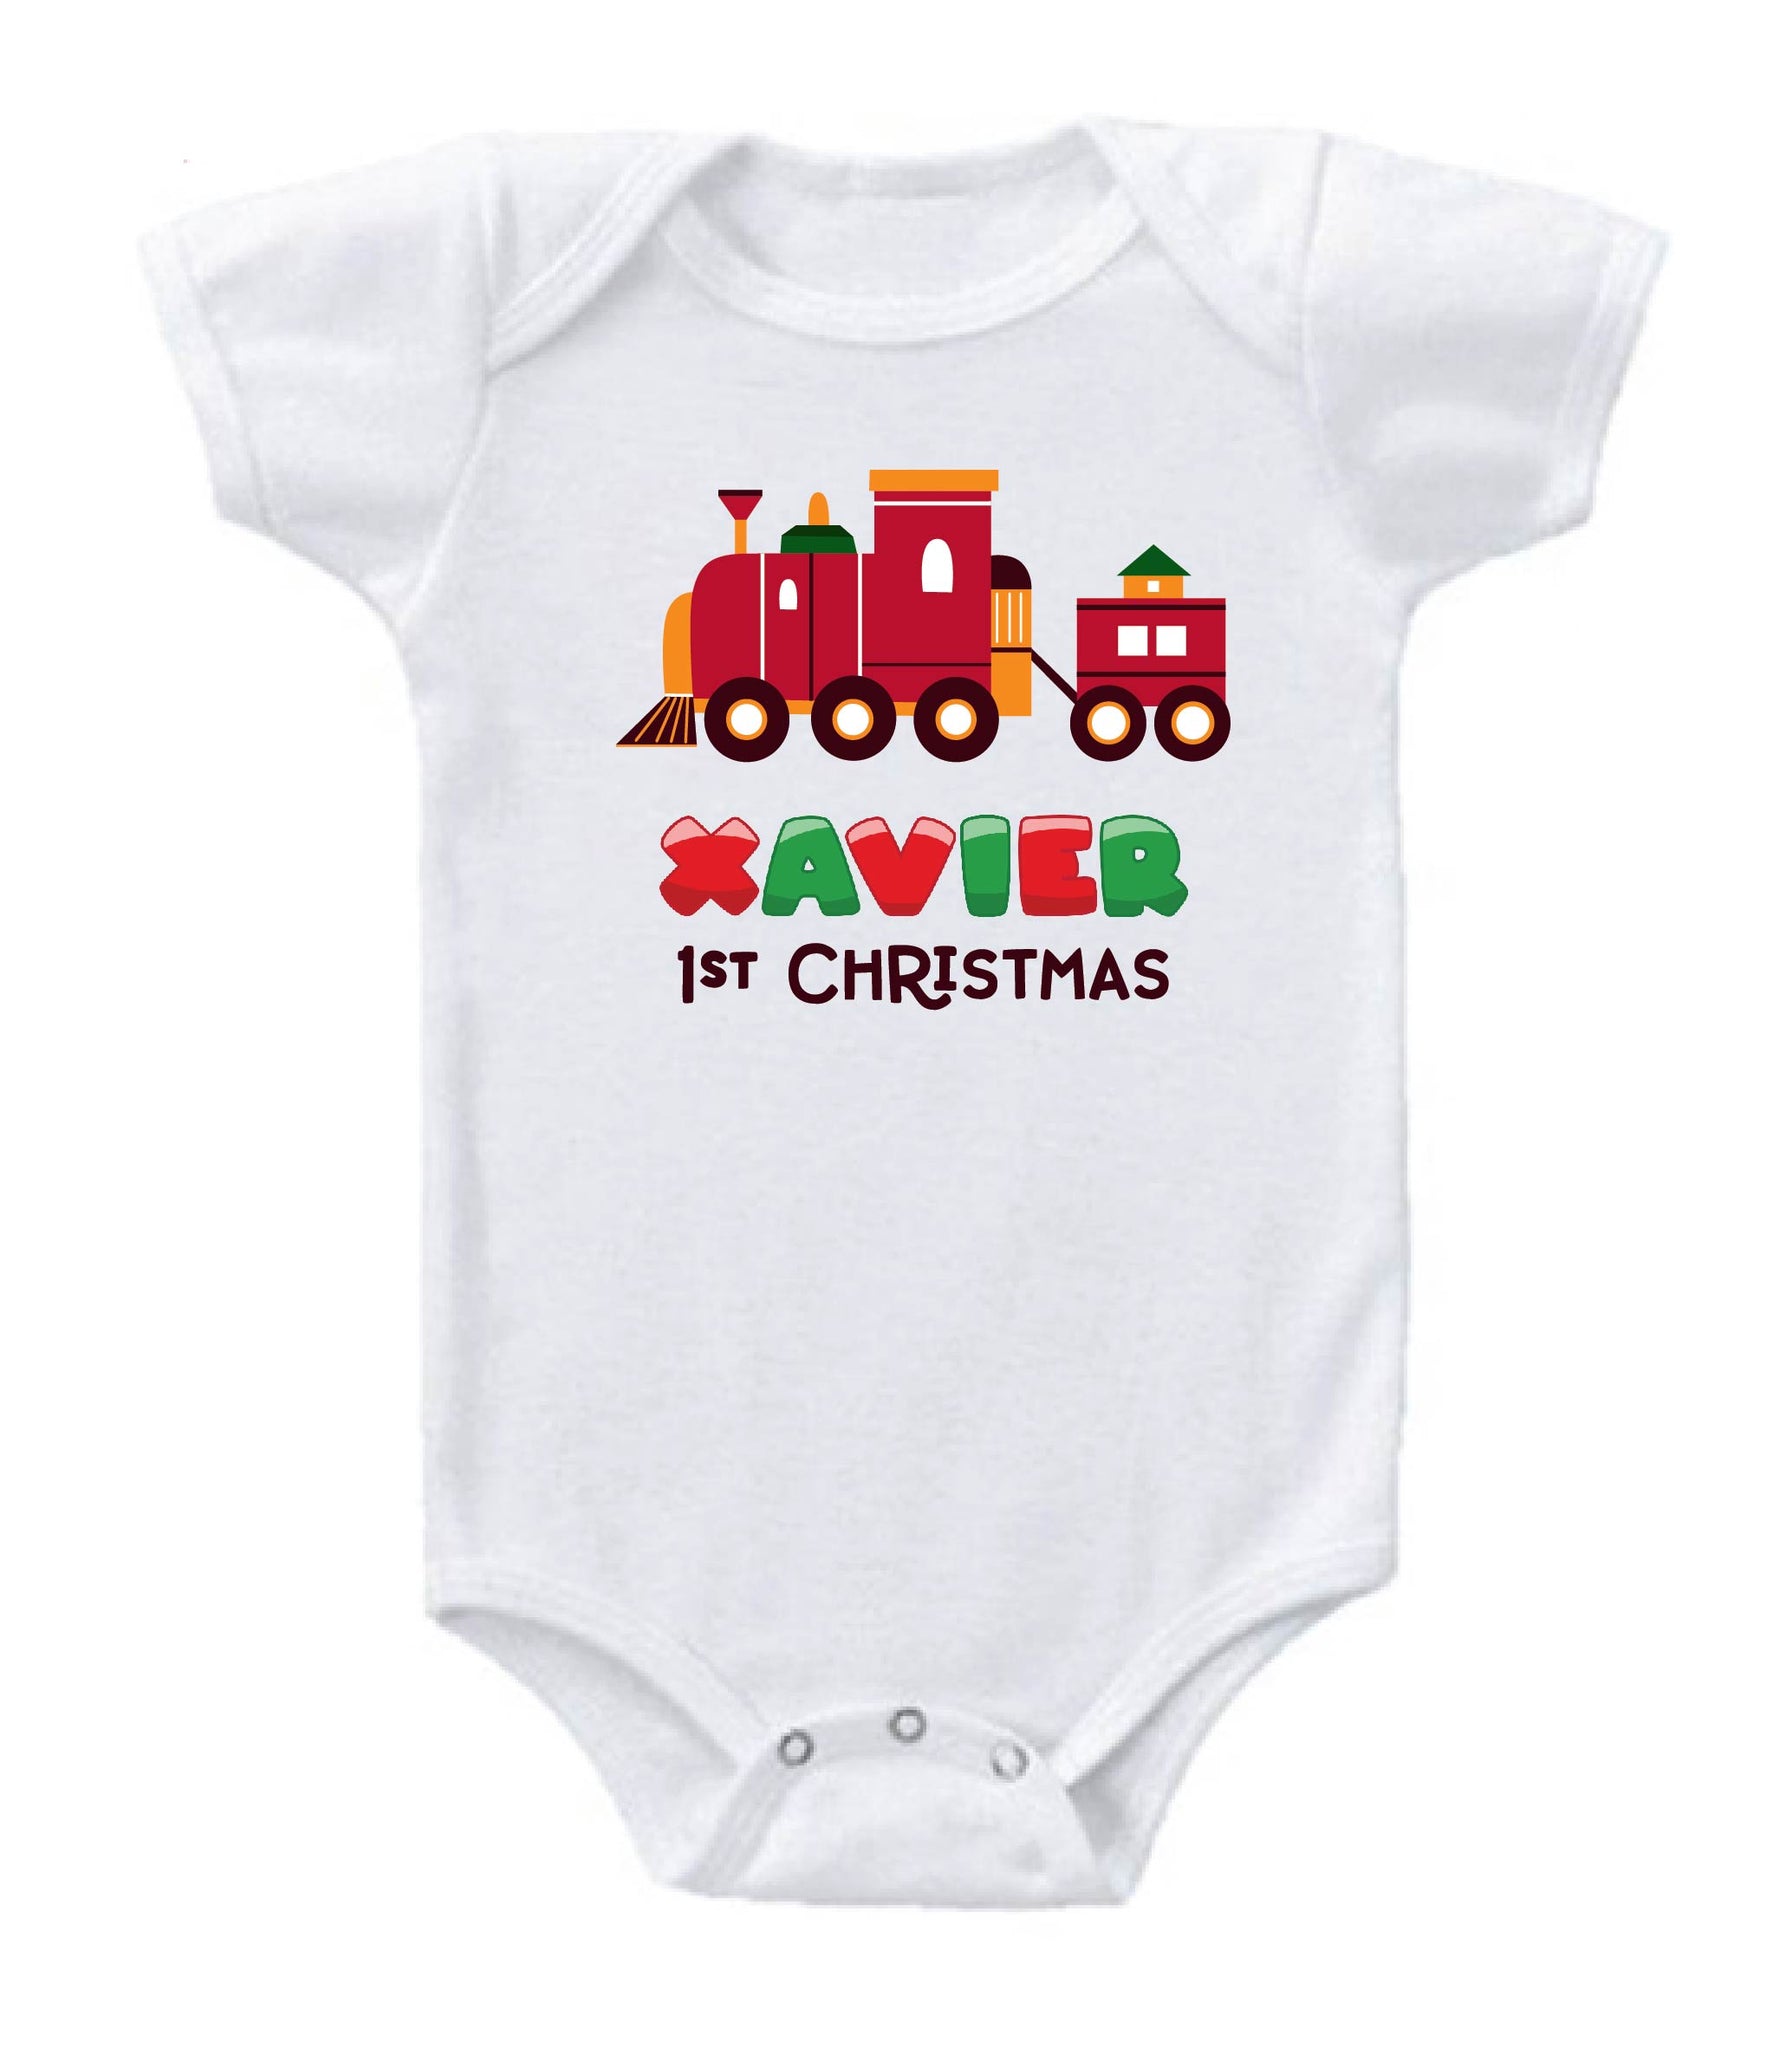 Personalised Baby Onesie / Tee - Christmas Train